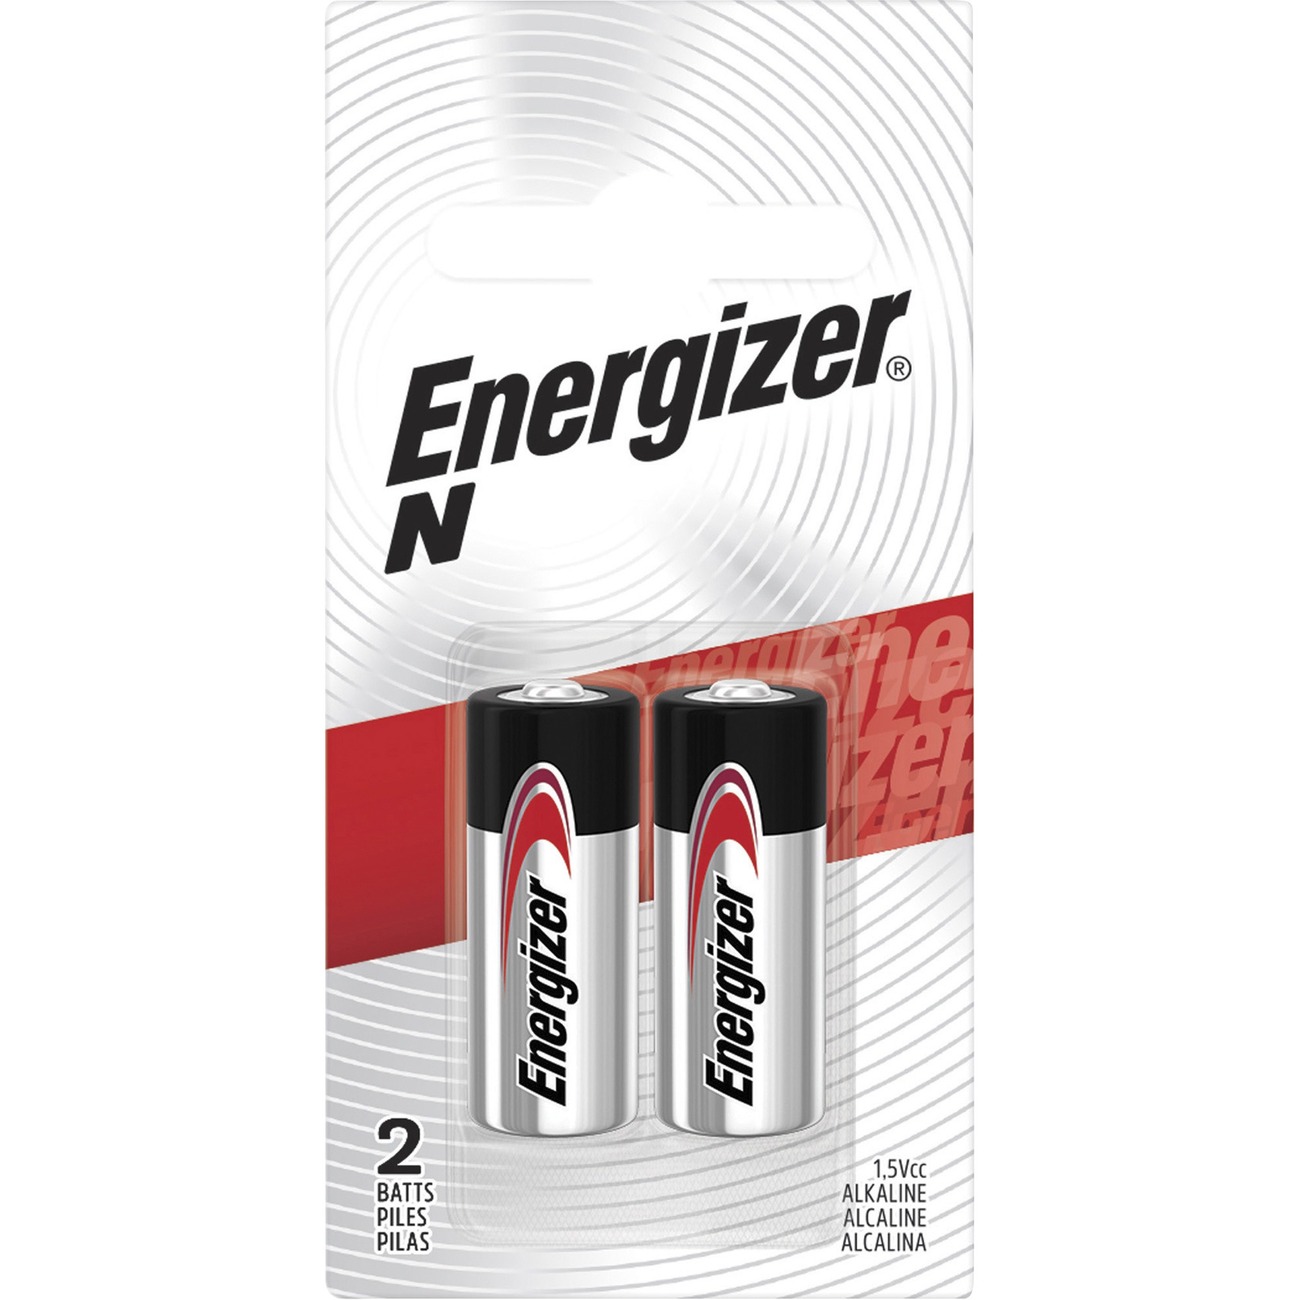 2 Pack Energizer Rechargeable Power Plus AA 2300 mAh Batterie 2 Ea = 4  Batteries